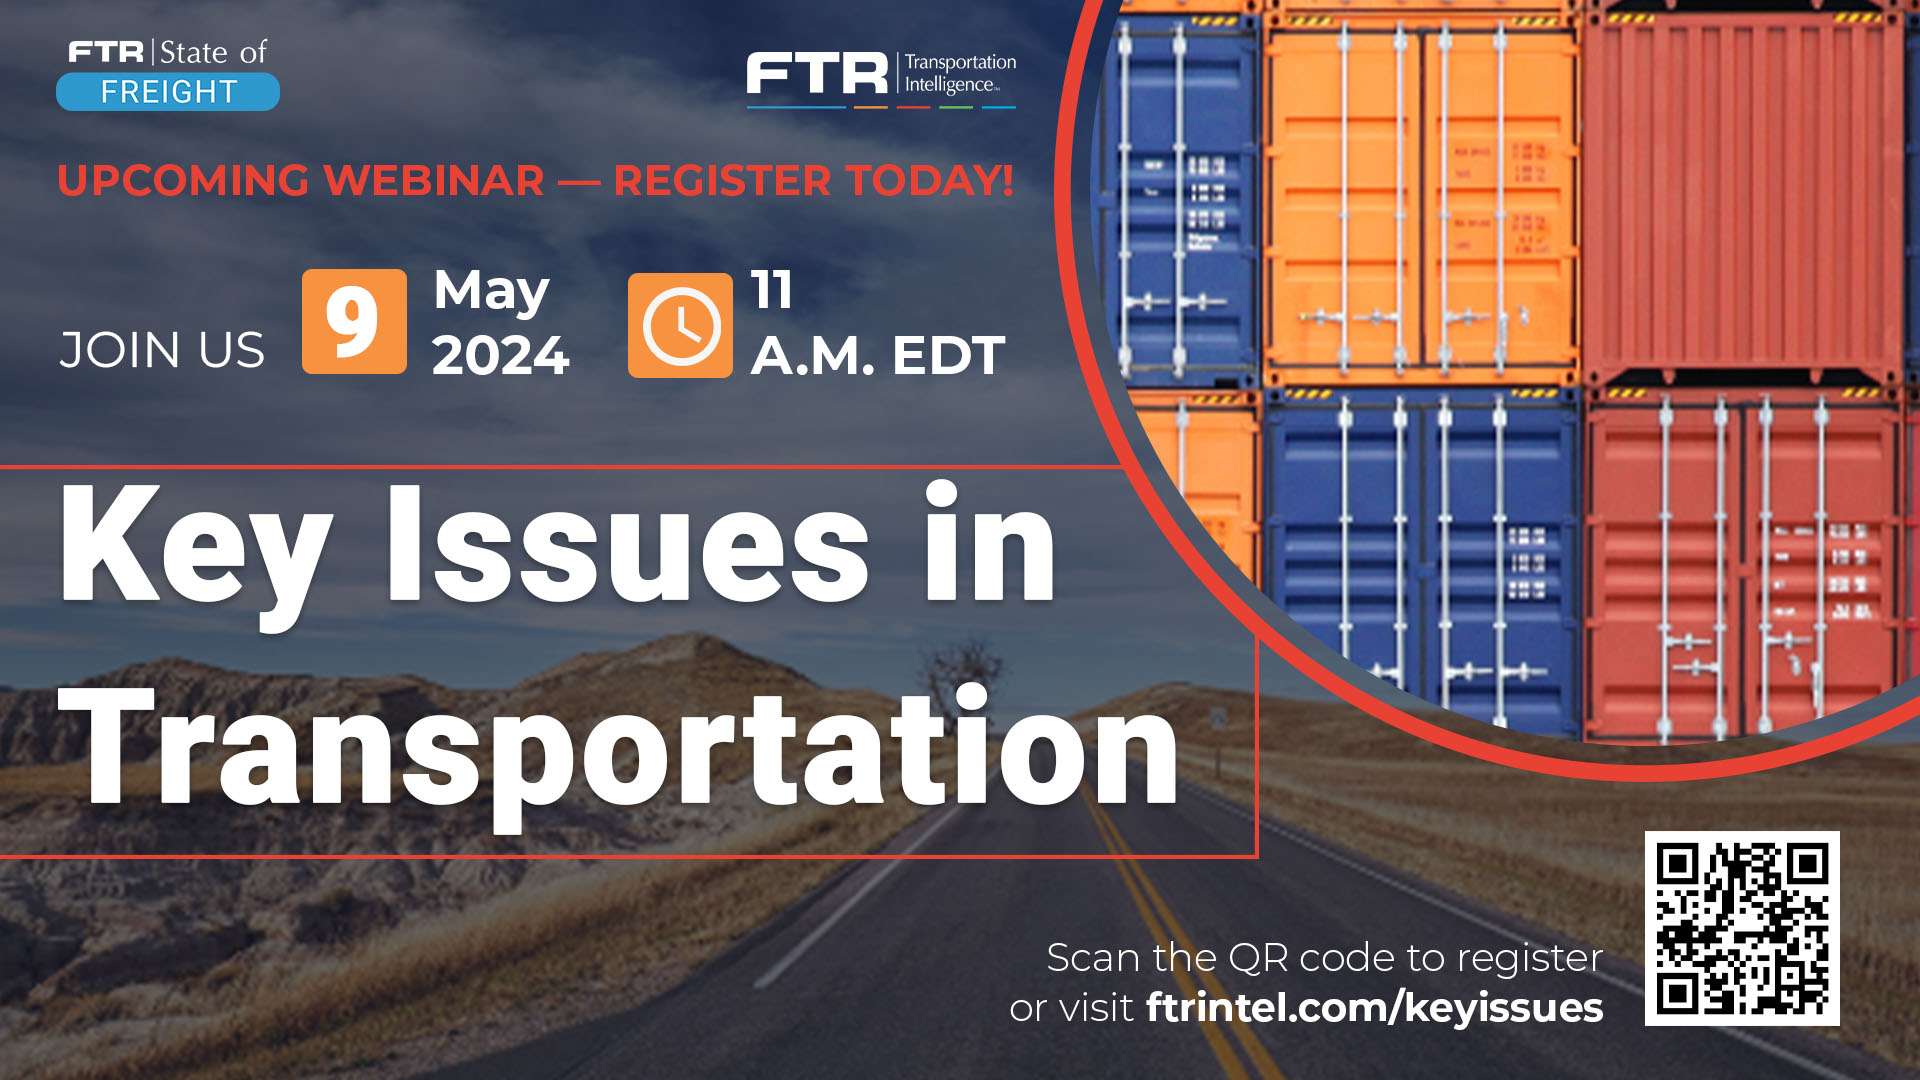 FTR_Key Issues webinar_May 2024_Social media_Register today(1)